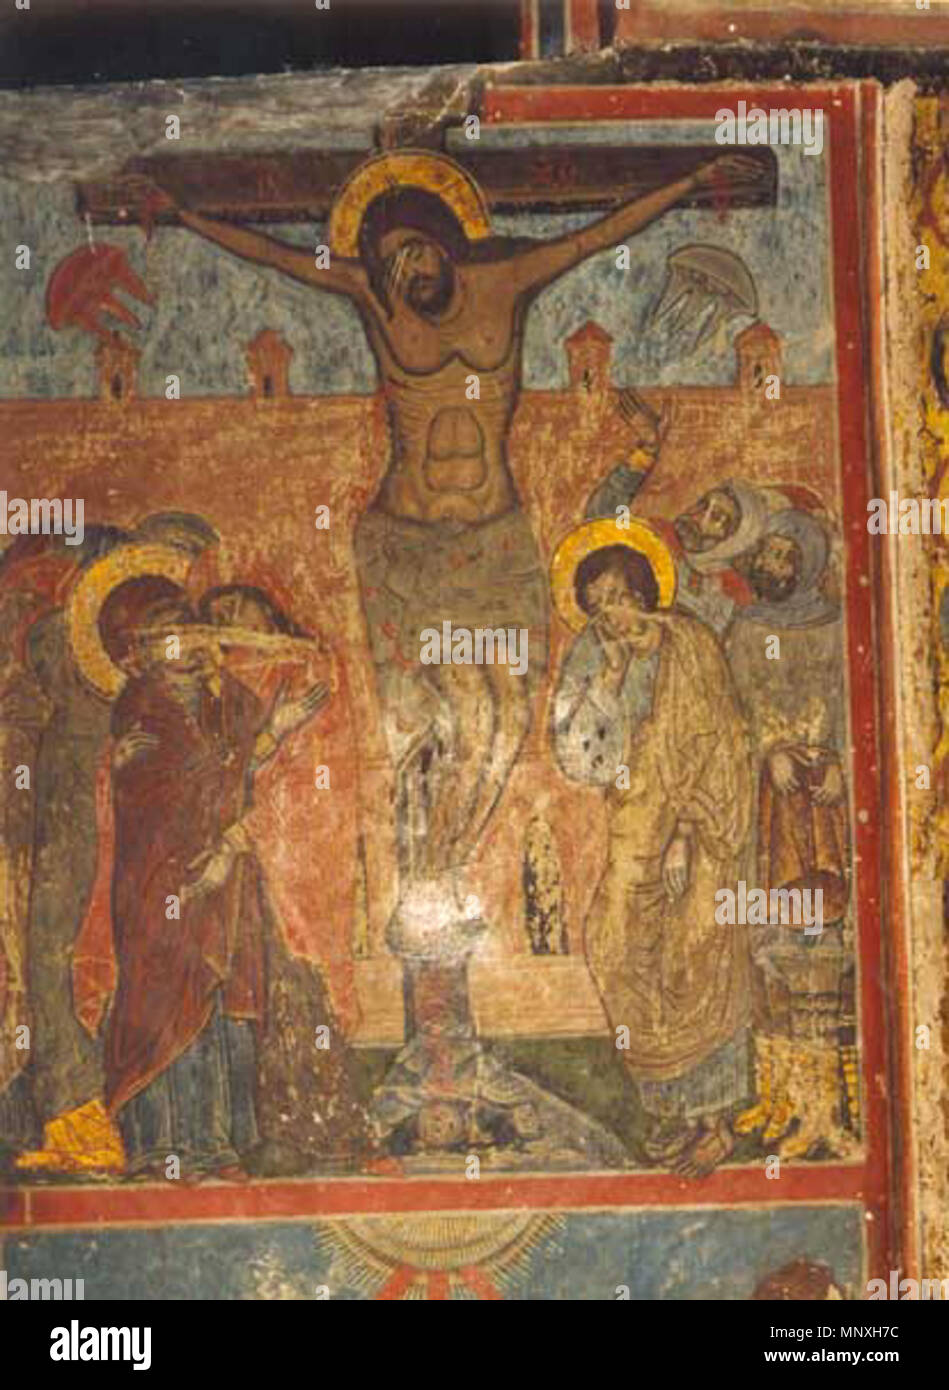 . Anglais : La Crucifixion fresque de la cathédrale de Svetitskhoveli, Mtskheta (Géorgie) . 16e siècle. 1153 Inconnu Crucifixion Svetitskhoveli fresco Banque D'Images